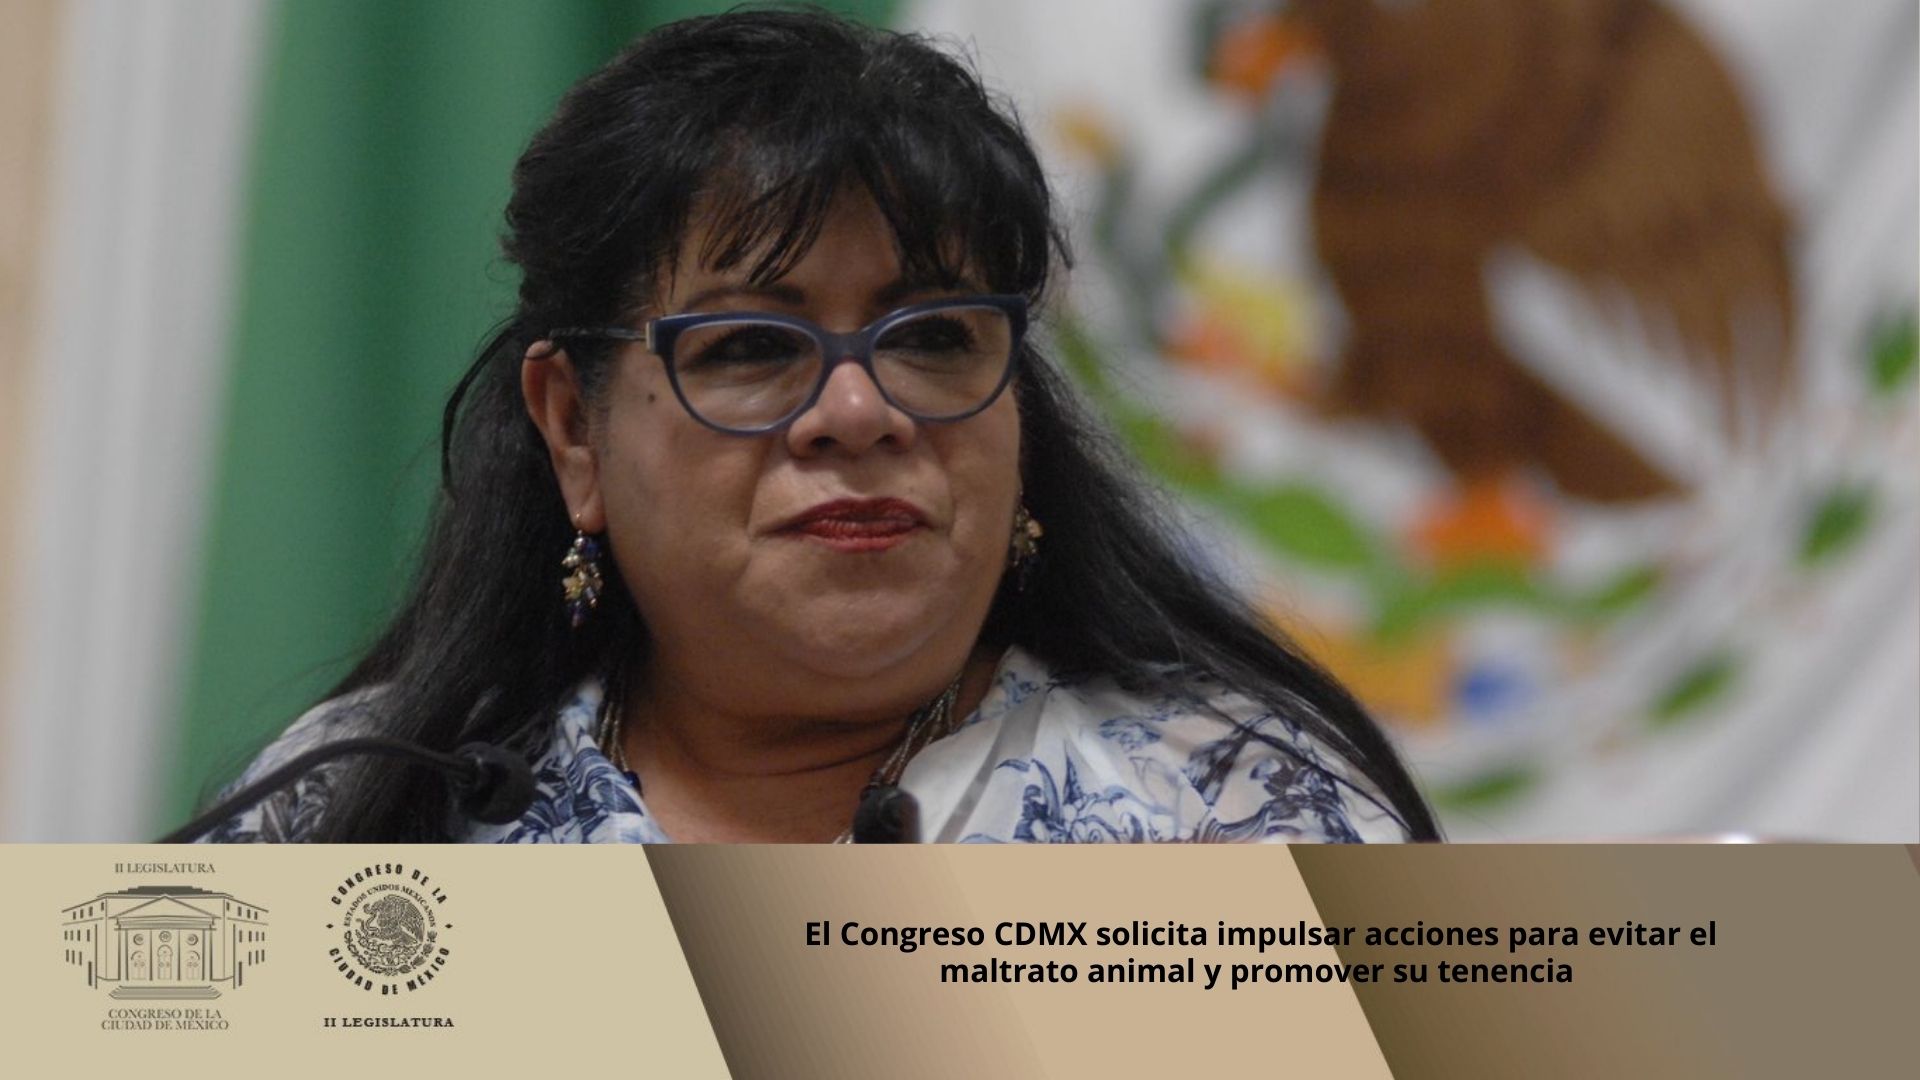 El Congreso CDMX solicita impulsar acciones para evitar el maltrato animal y promover su tenencia